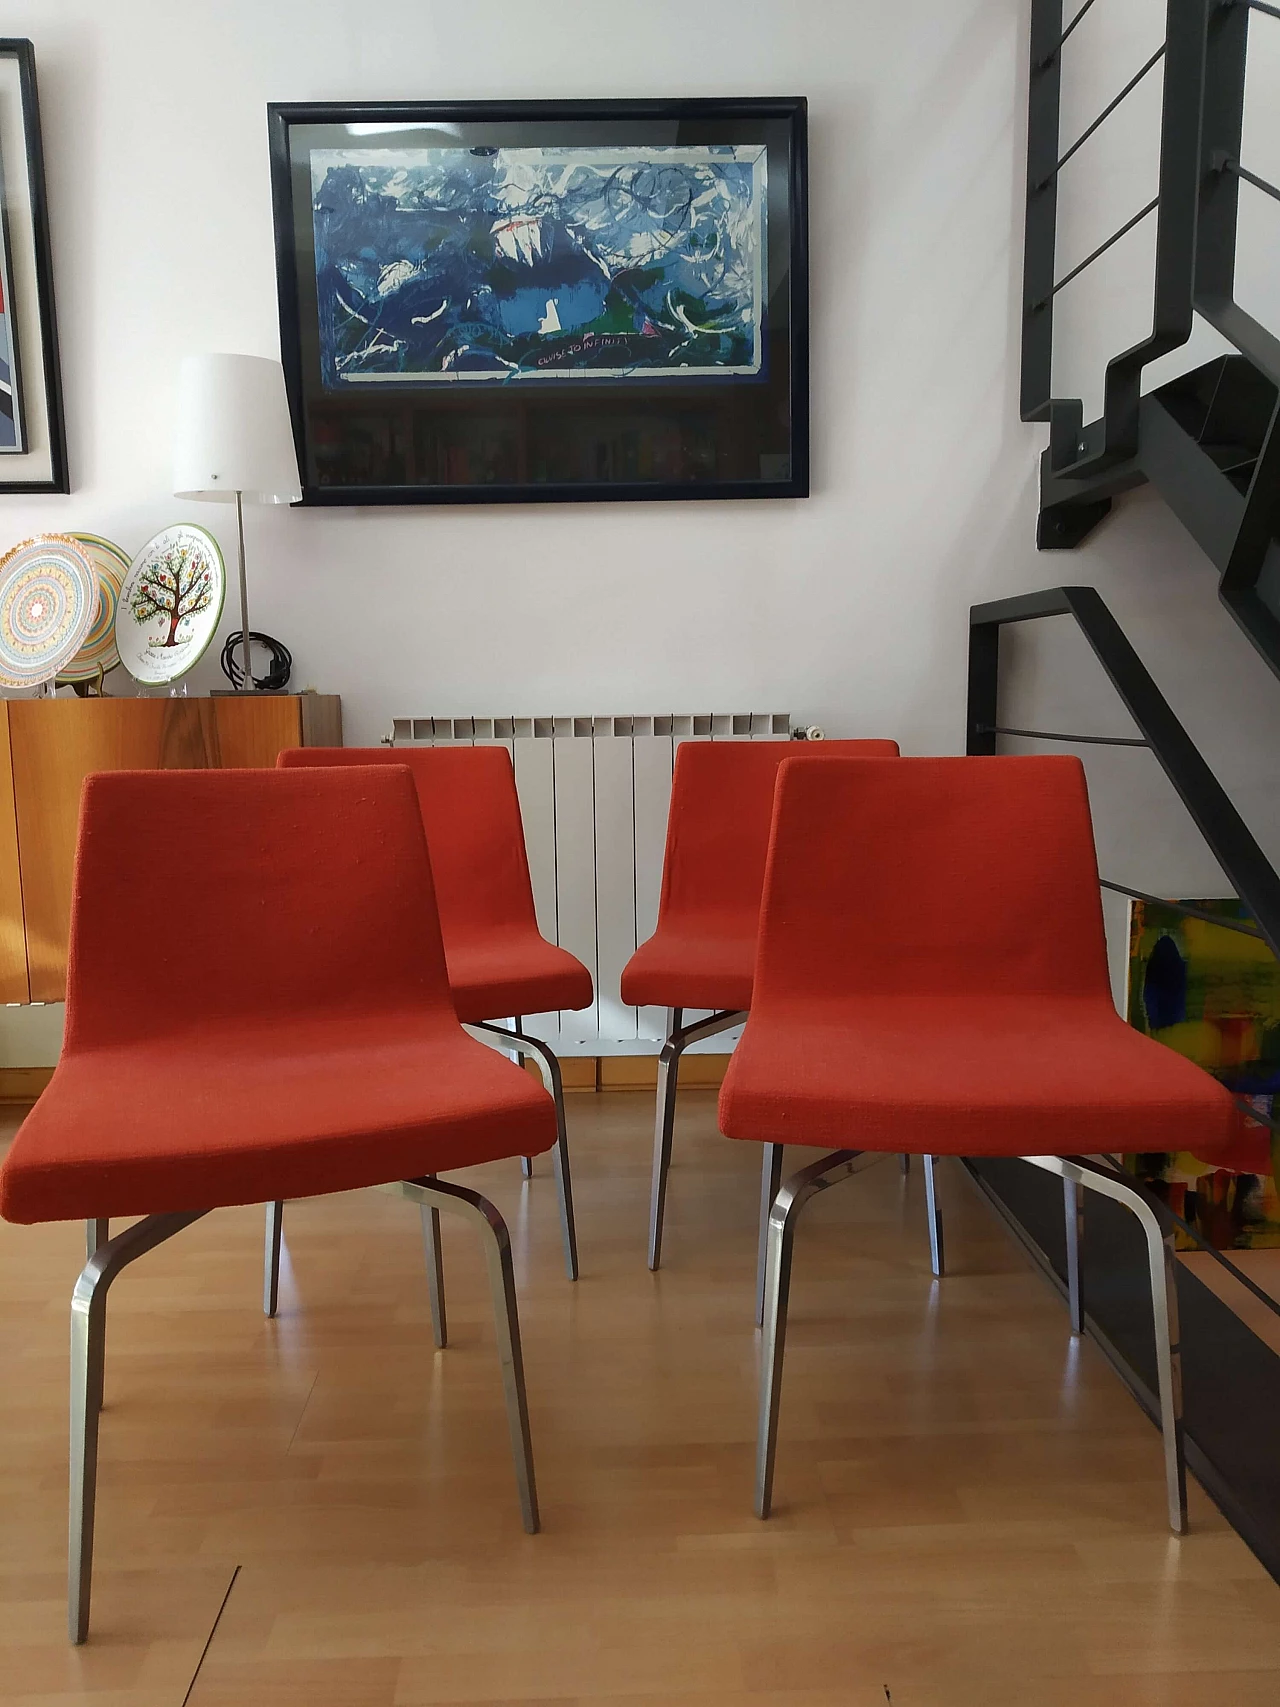 4 Hella Chairs by Mauro Lipparini for MisuraEmme 1477125